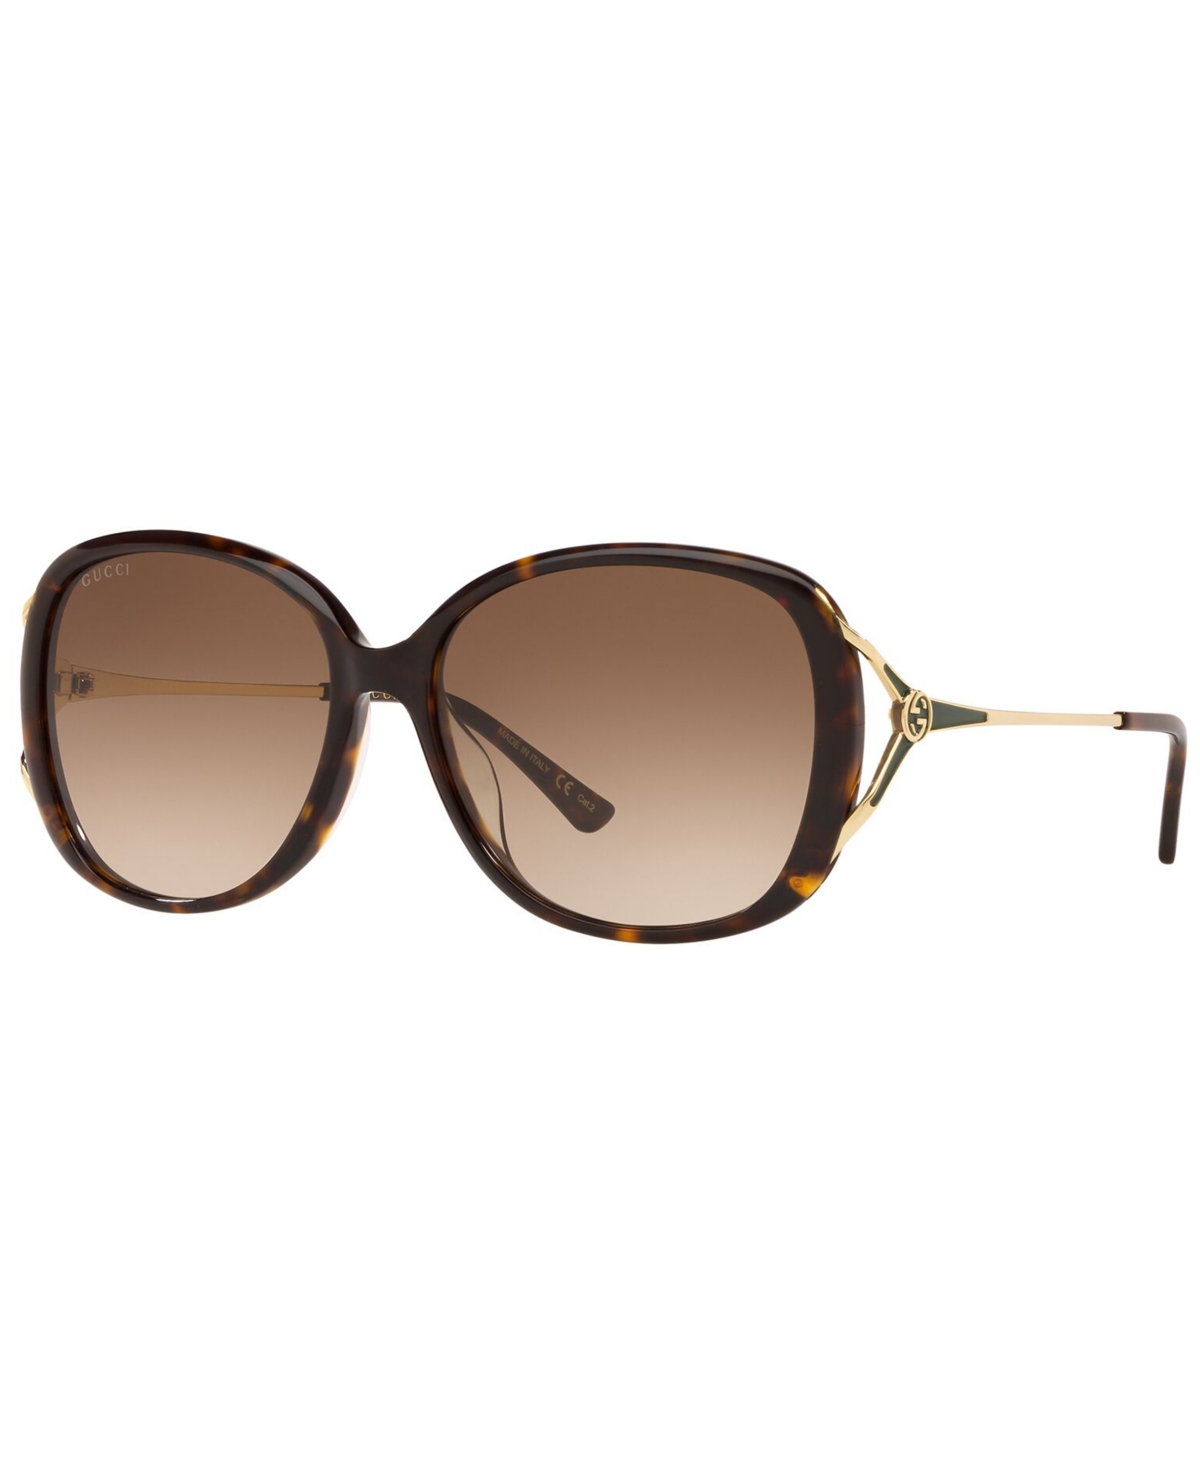 Gucci Women's Sunglasses, 0gc001374 In Tortoise,brown Grad